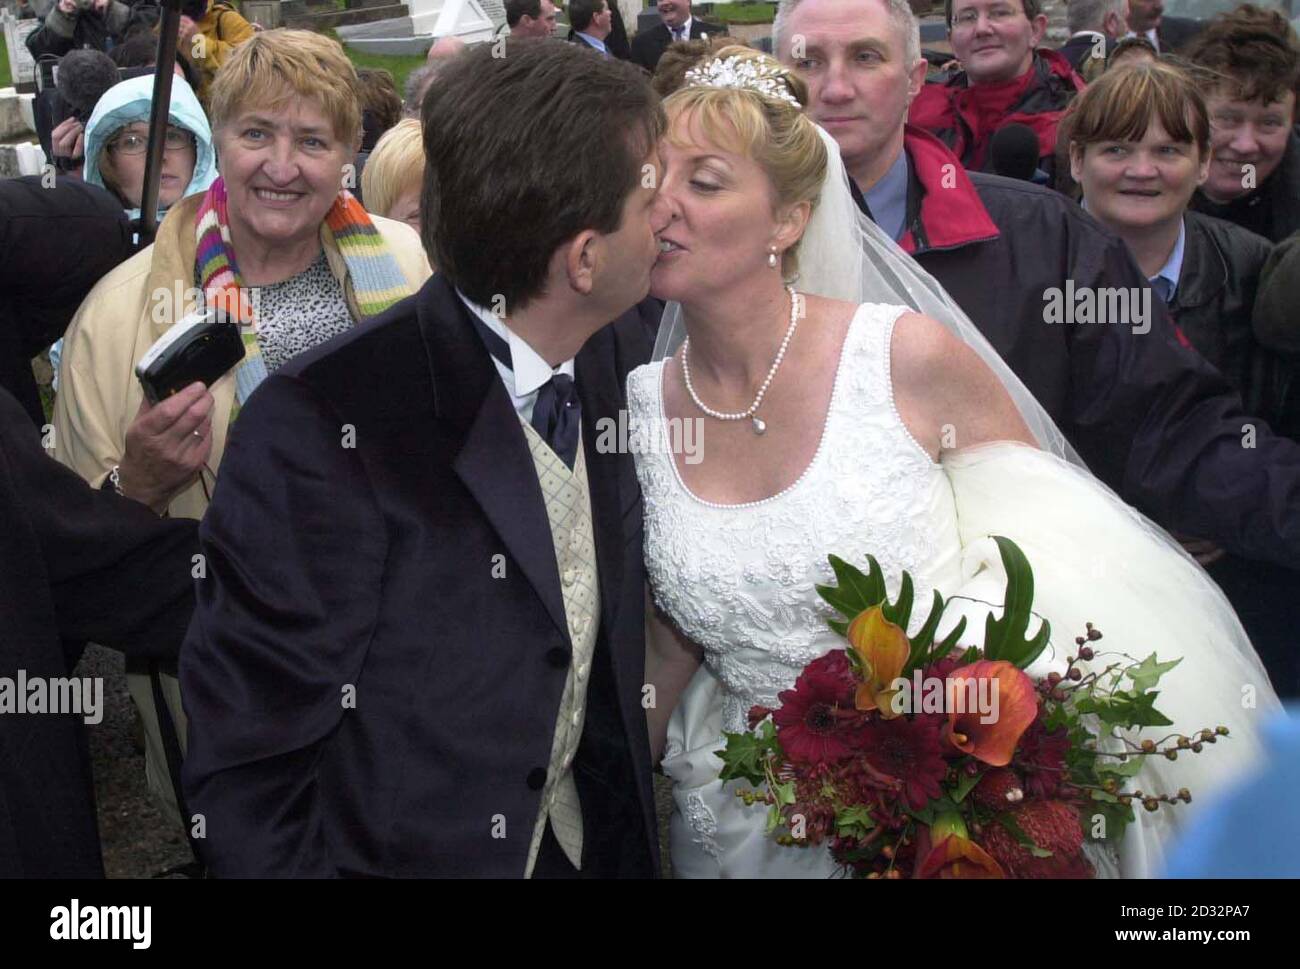 Le chanteur de pays irlandais Daniel O'Donnell embrasse sa mariée, Majella McLennan, à l'extérieur de l'église St Mary's après qu'ils se soient mariés, à Kincasslagh, Co. Donegal. Quelque 550 personnes, dont des amis, de la famille et des voisins, ont assisté au mariage traditionnel. * ... à l'église sur le bord de l'eau en Irlande de l'Ouest que les foules de fans ont cherché à féliciter le couple. Banque D'Images